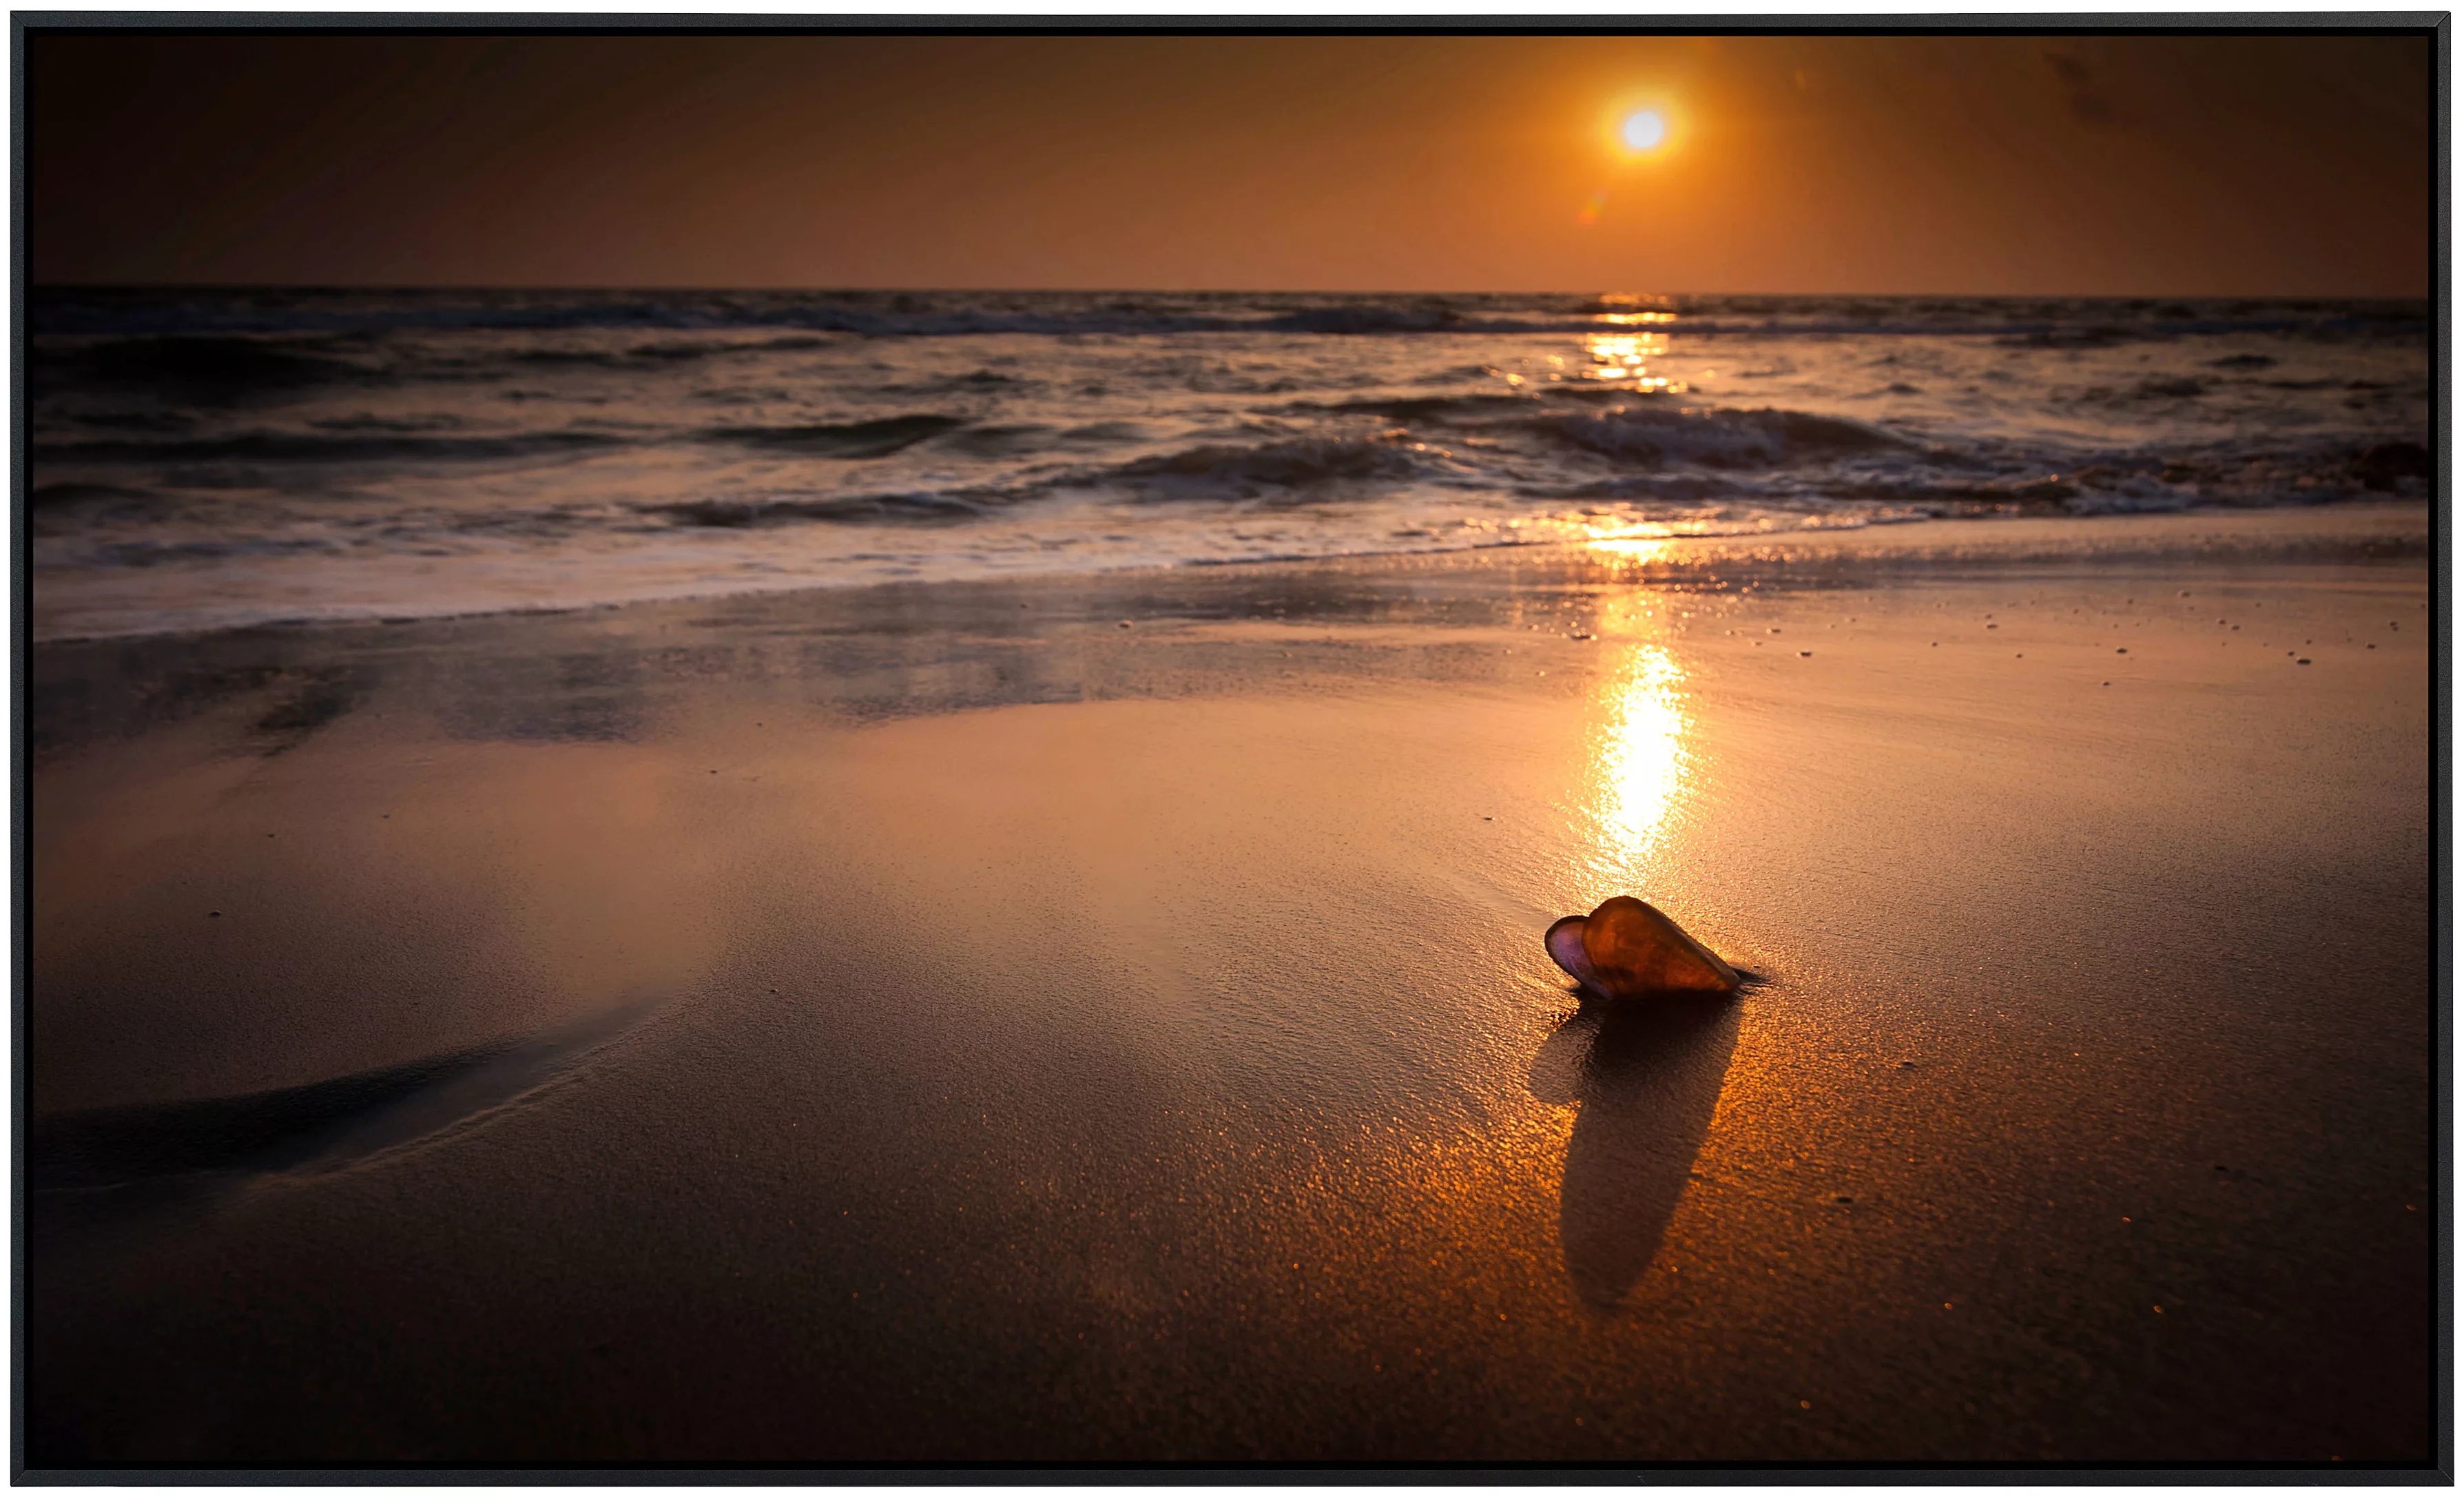 Papermoon Infrarotheizung »Tropischer Strand Sonnenuntergang«, sehr angeneh günstig online kaufen